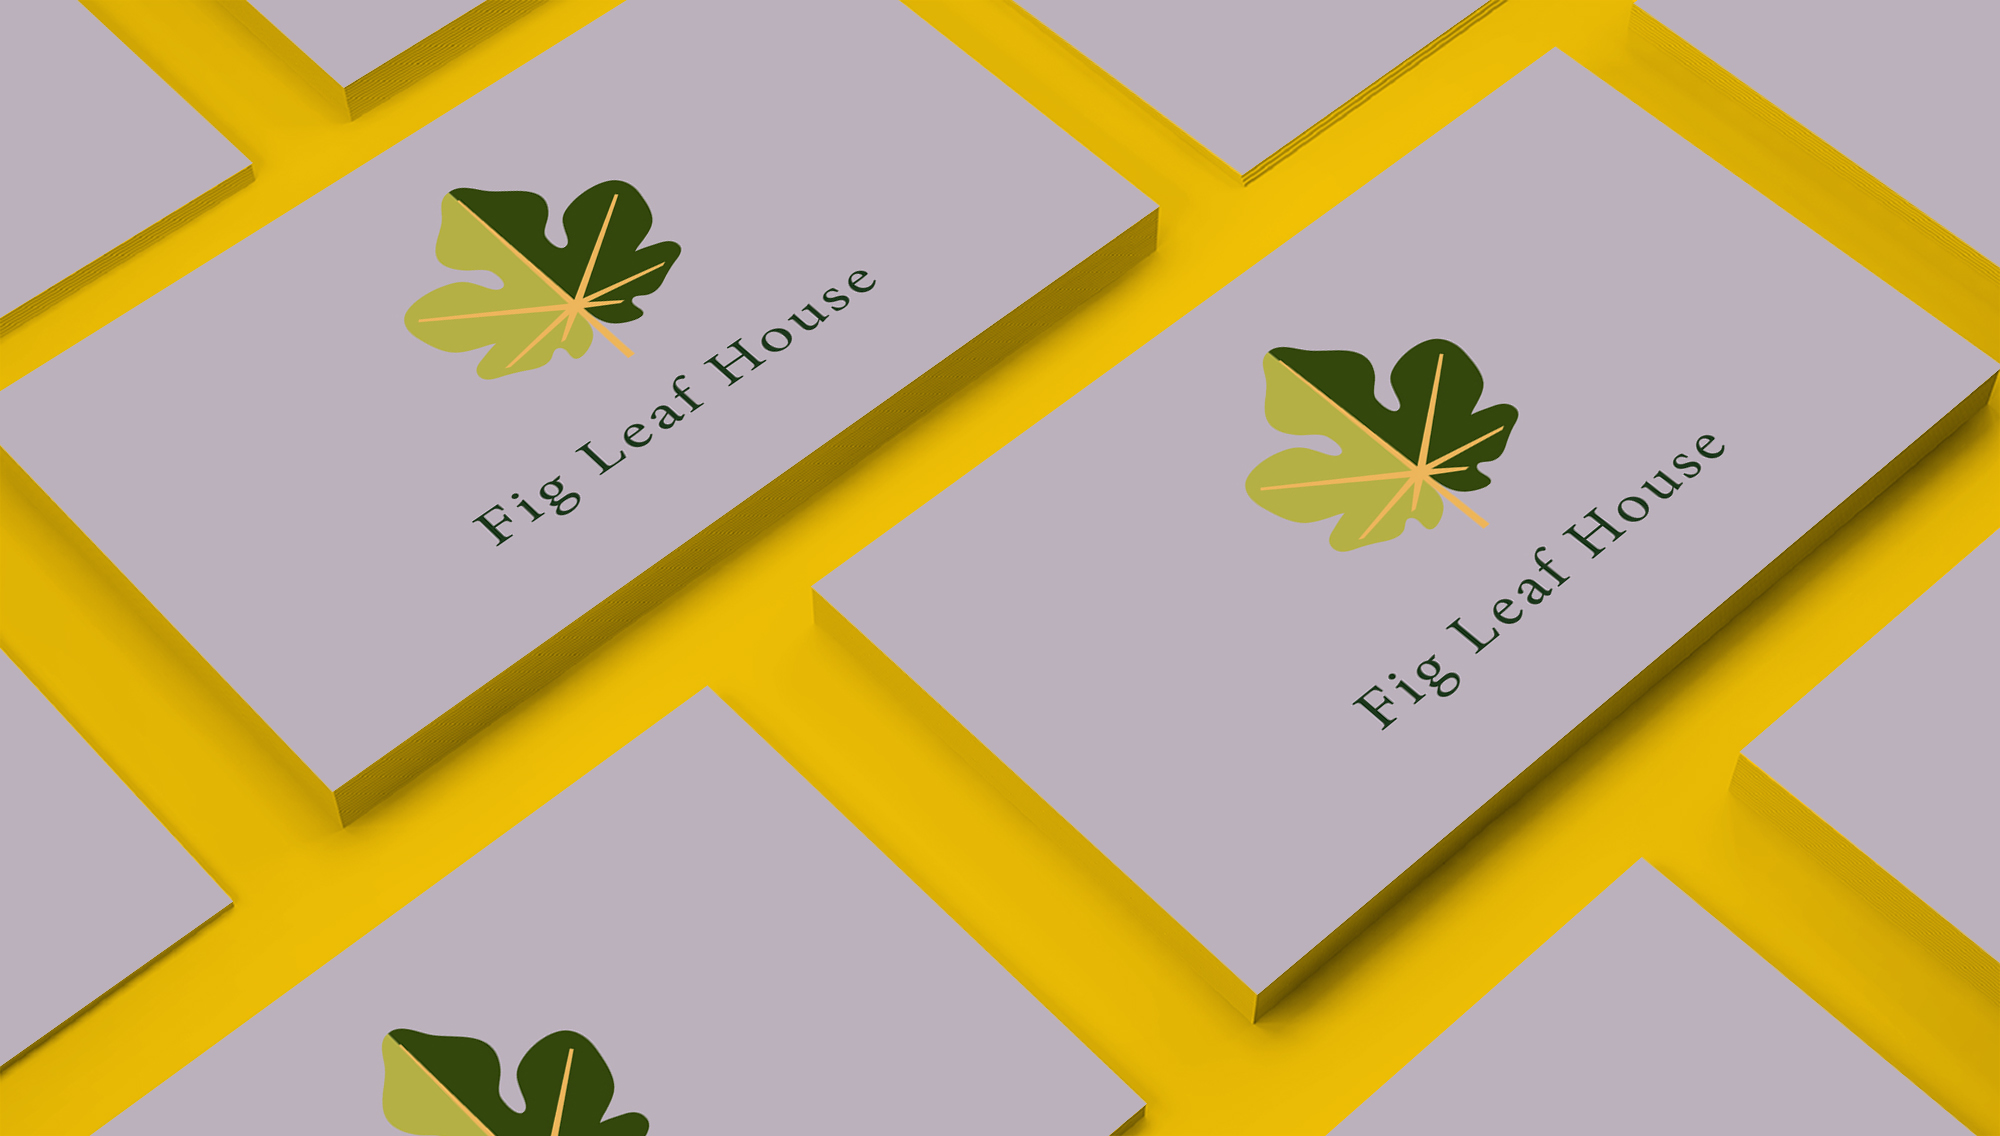 fig-leaf-house-brand-design